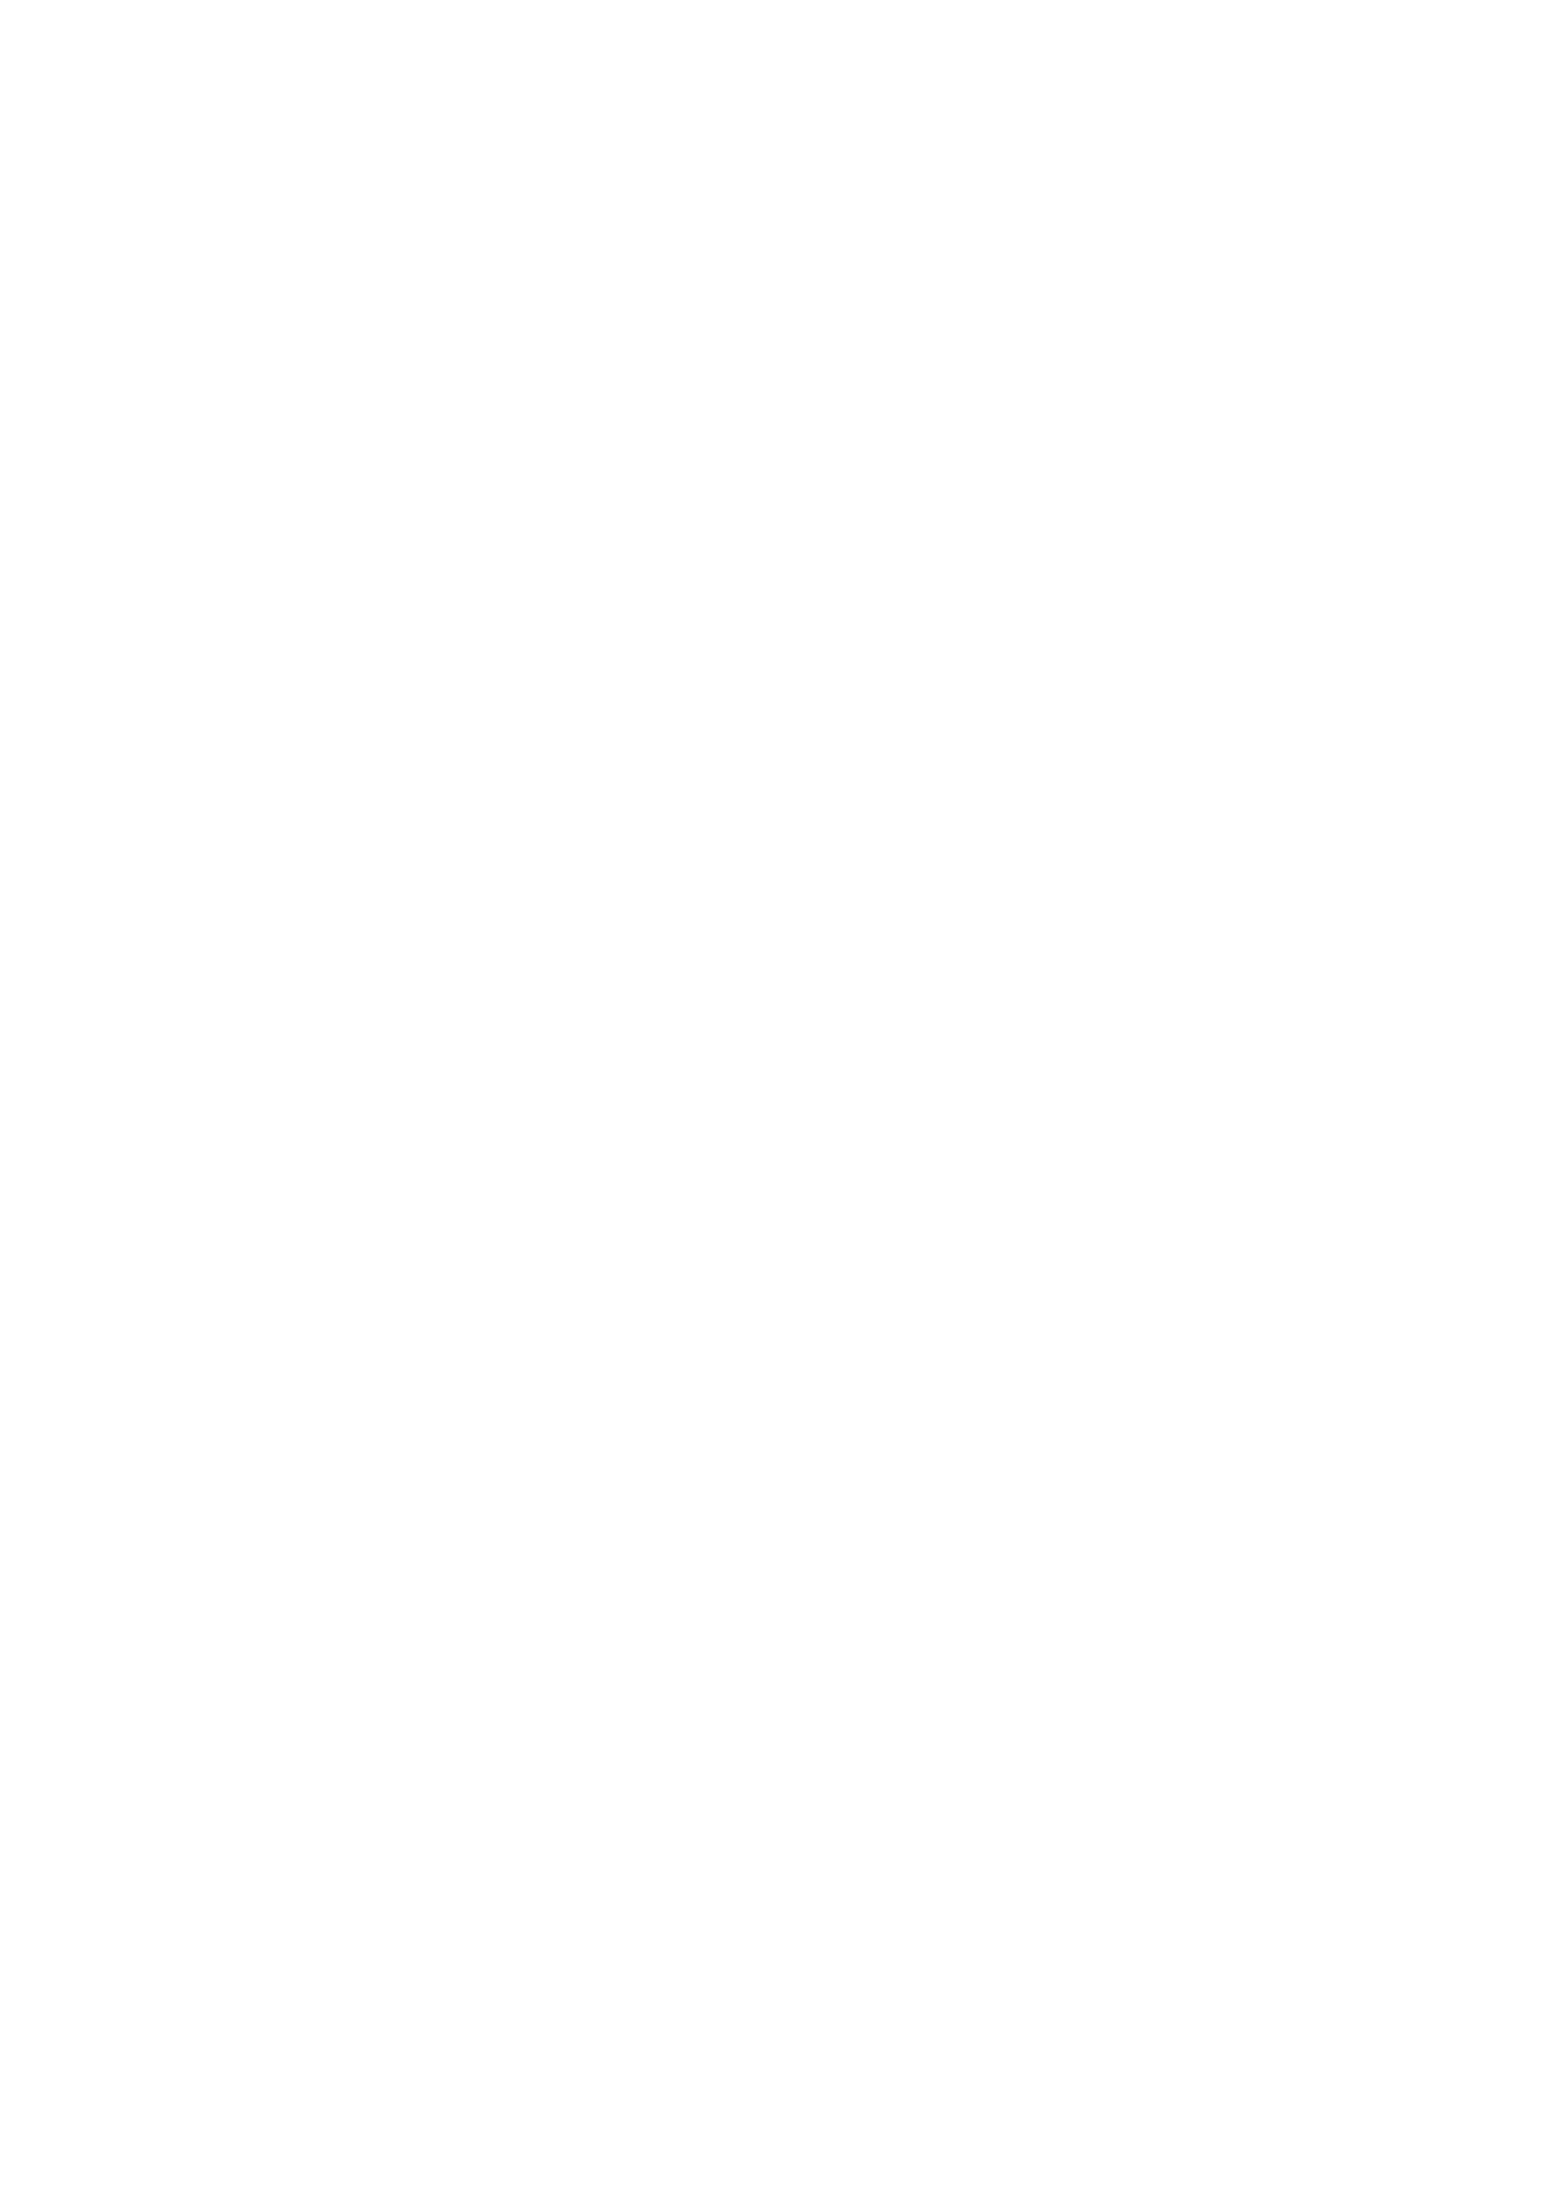 titre de l'affiche - Molière malgré lui...